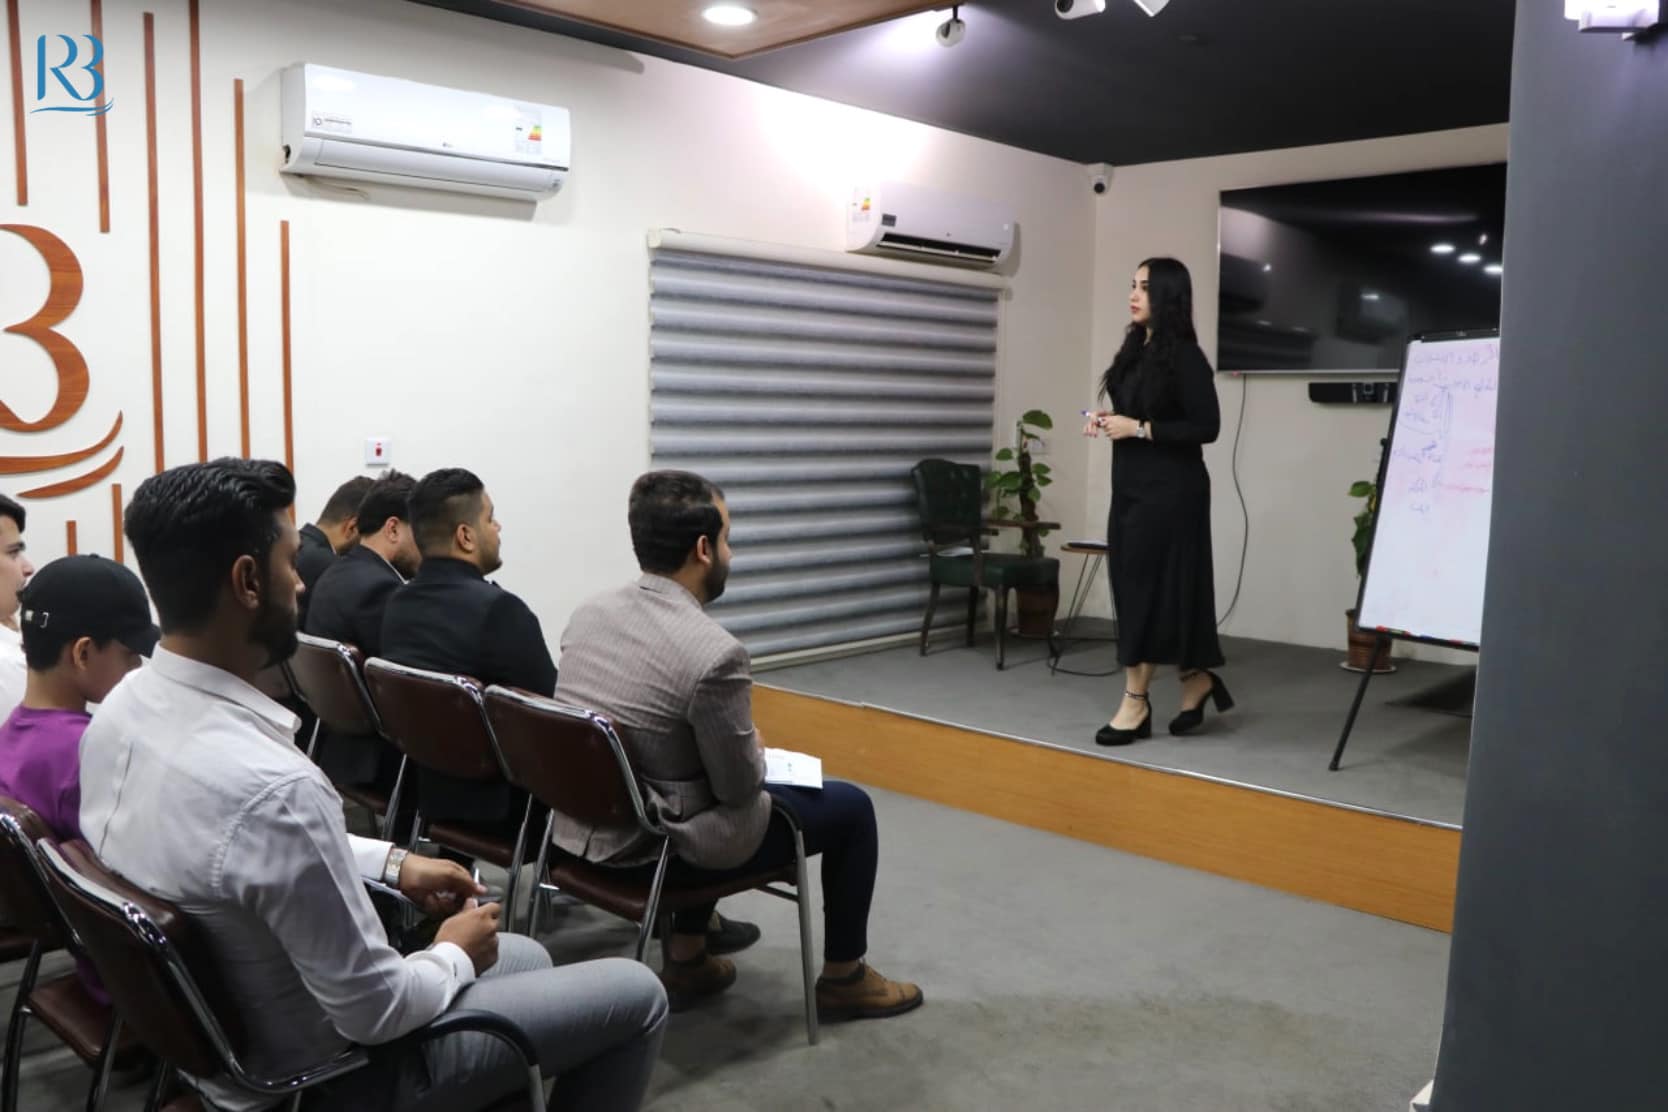 الورشة التدريبية  التي أقامها مركز رواق بغداد للسياسات العامة  لأعضاء وكوادر "مركز  فكر لإعداد القادة"